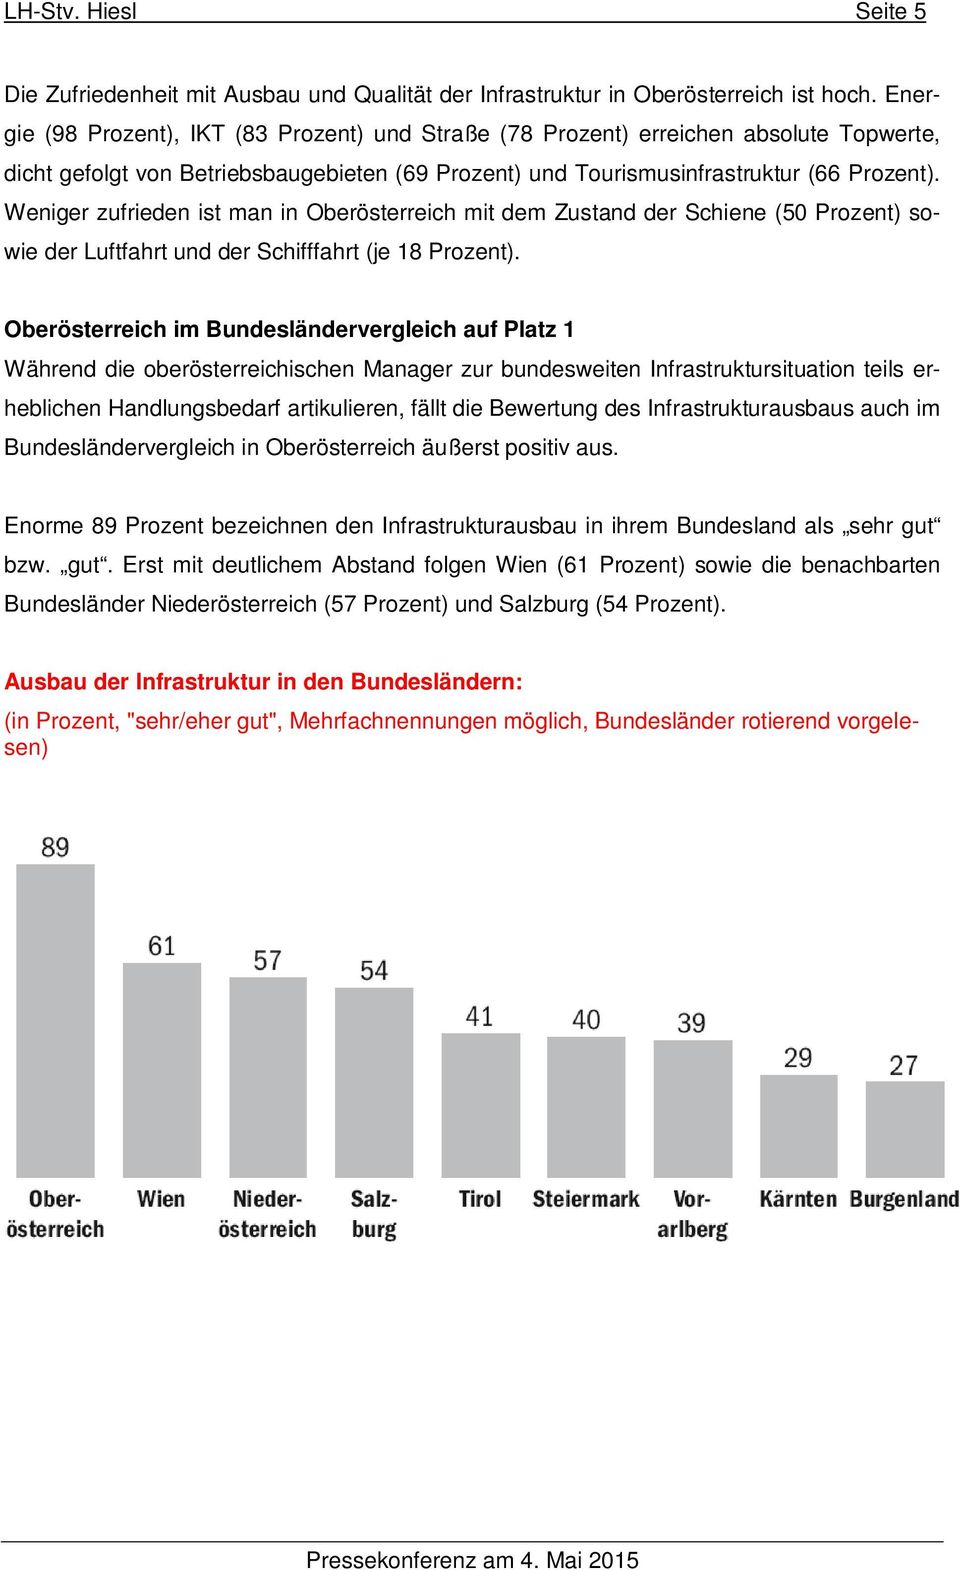 Weniger zufrieden ist man in Oberösterreich mit dem Zustand der Schiene (50 Prozent) sowie der Luftfahrt und der Schifffahrt (je 18 Prozent).